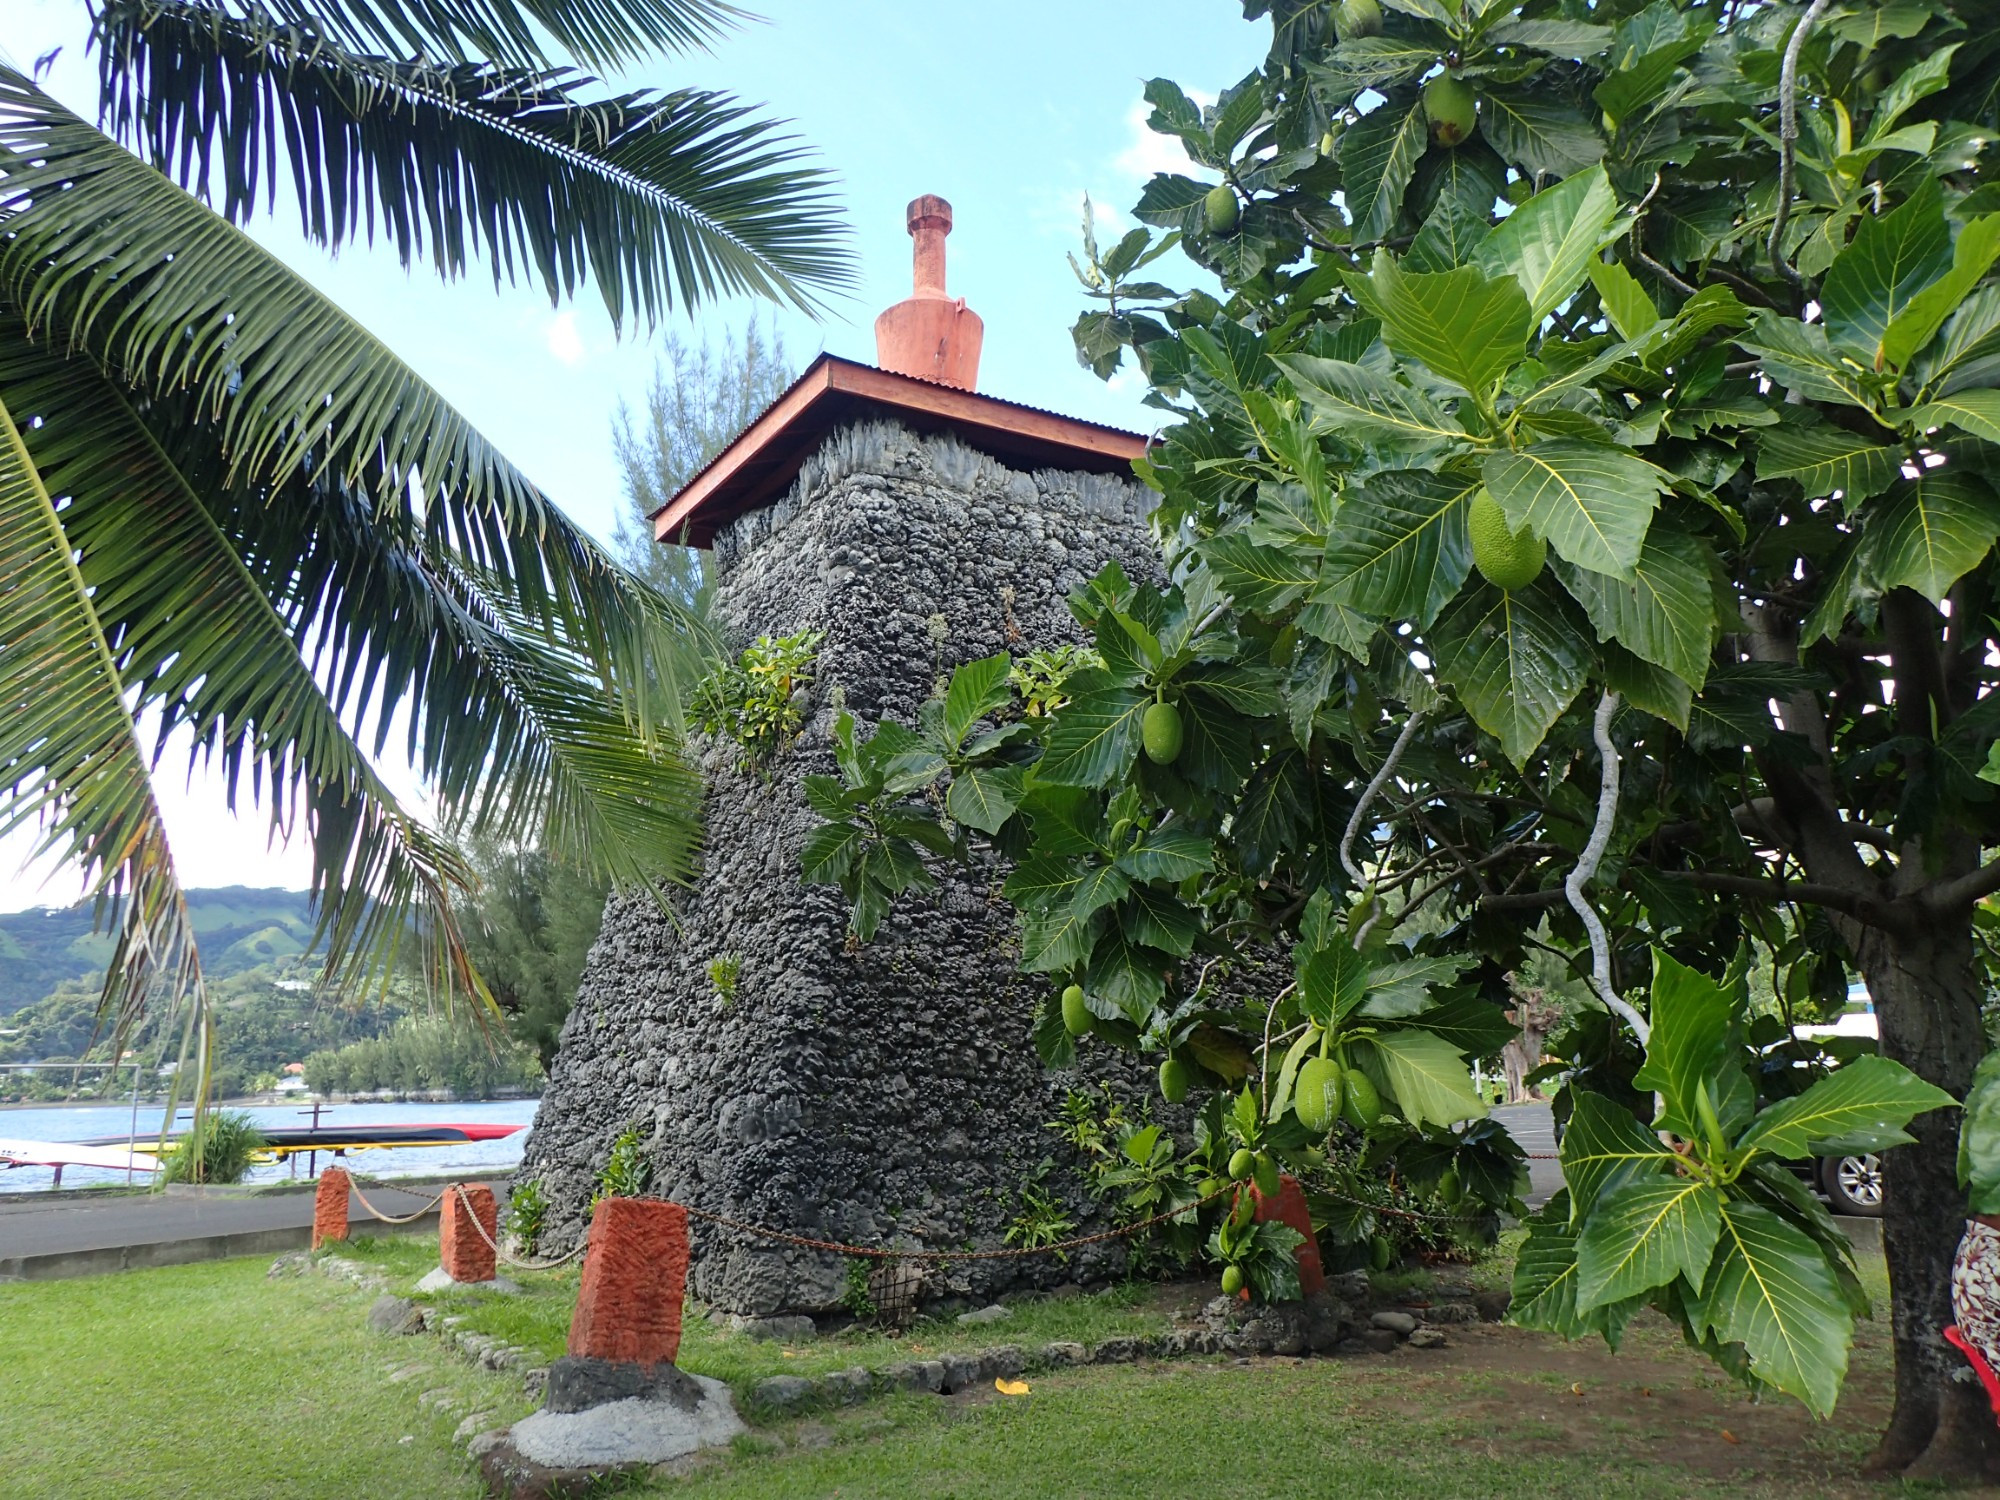 Tomb of King Pomare V, Французская Полинезия